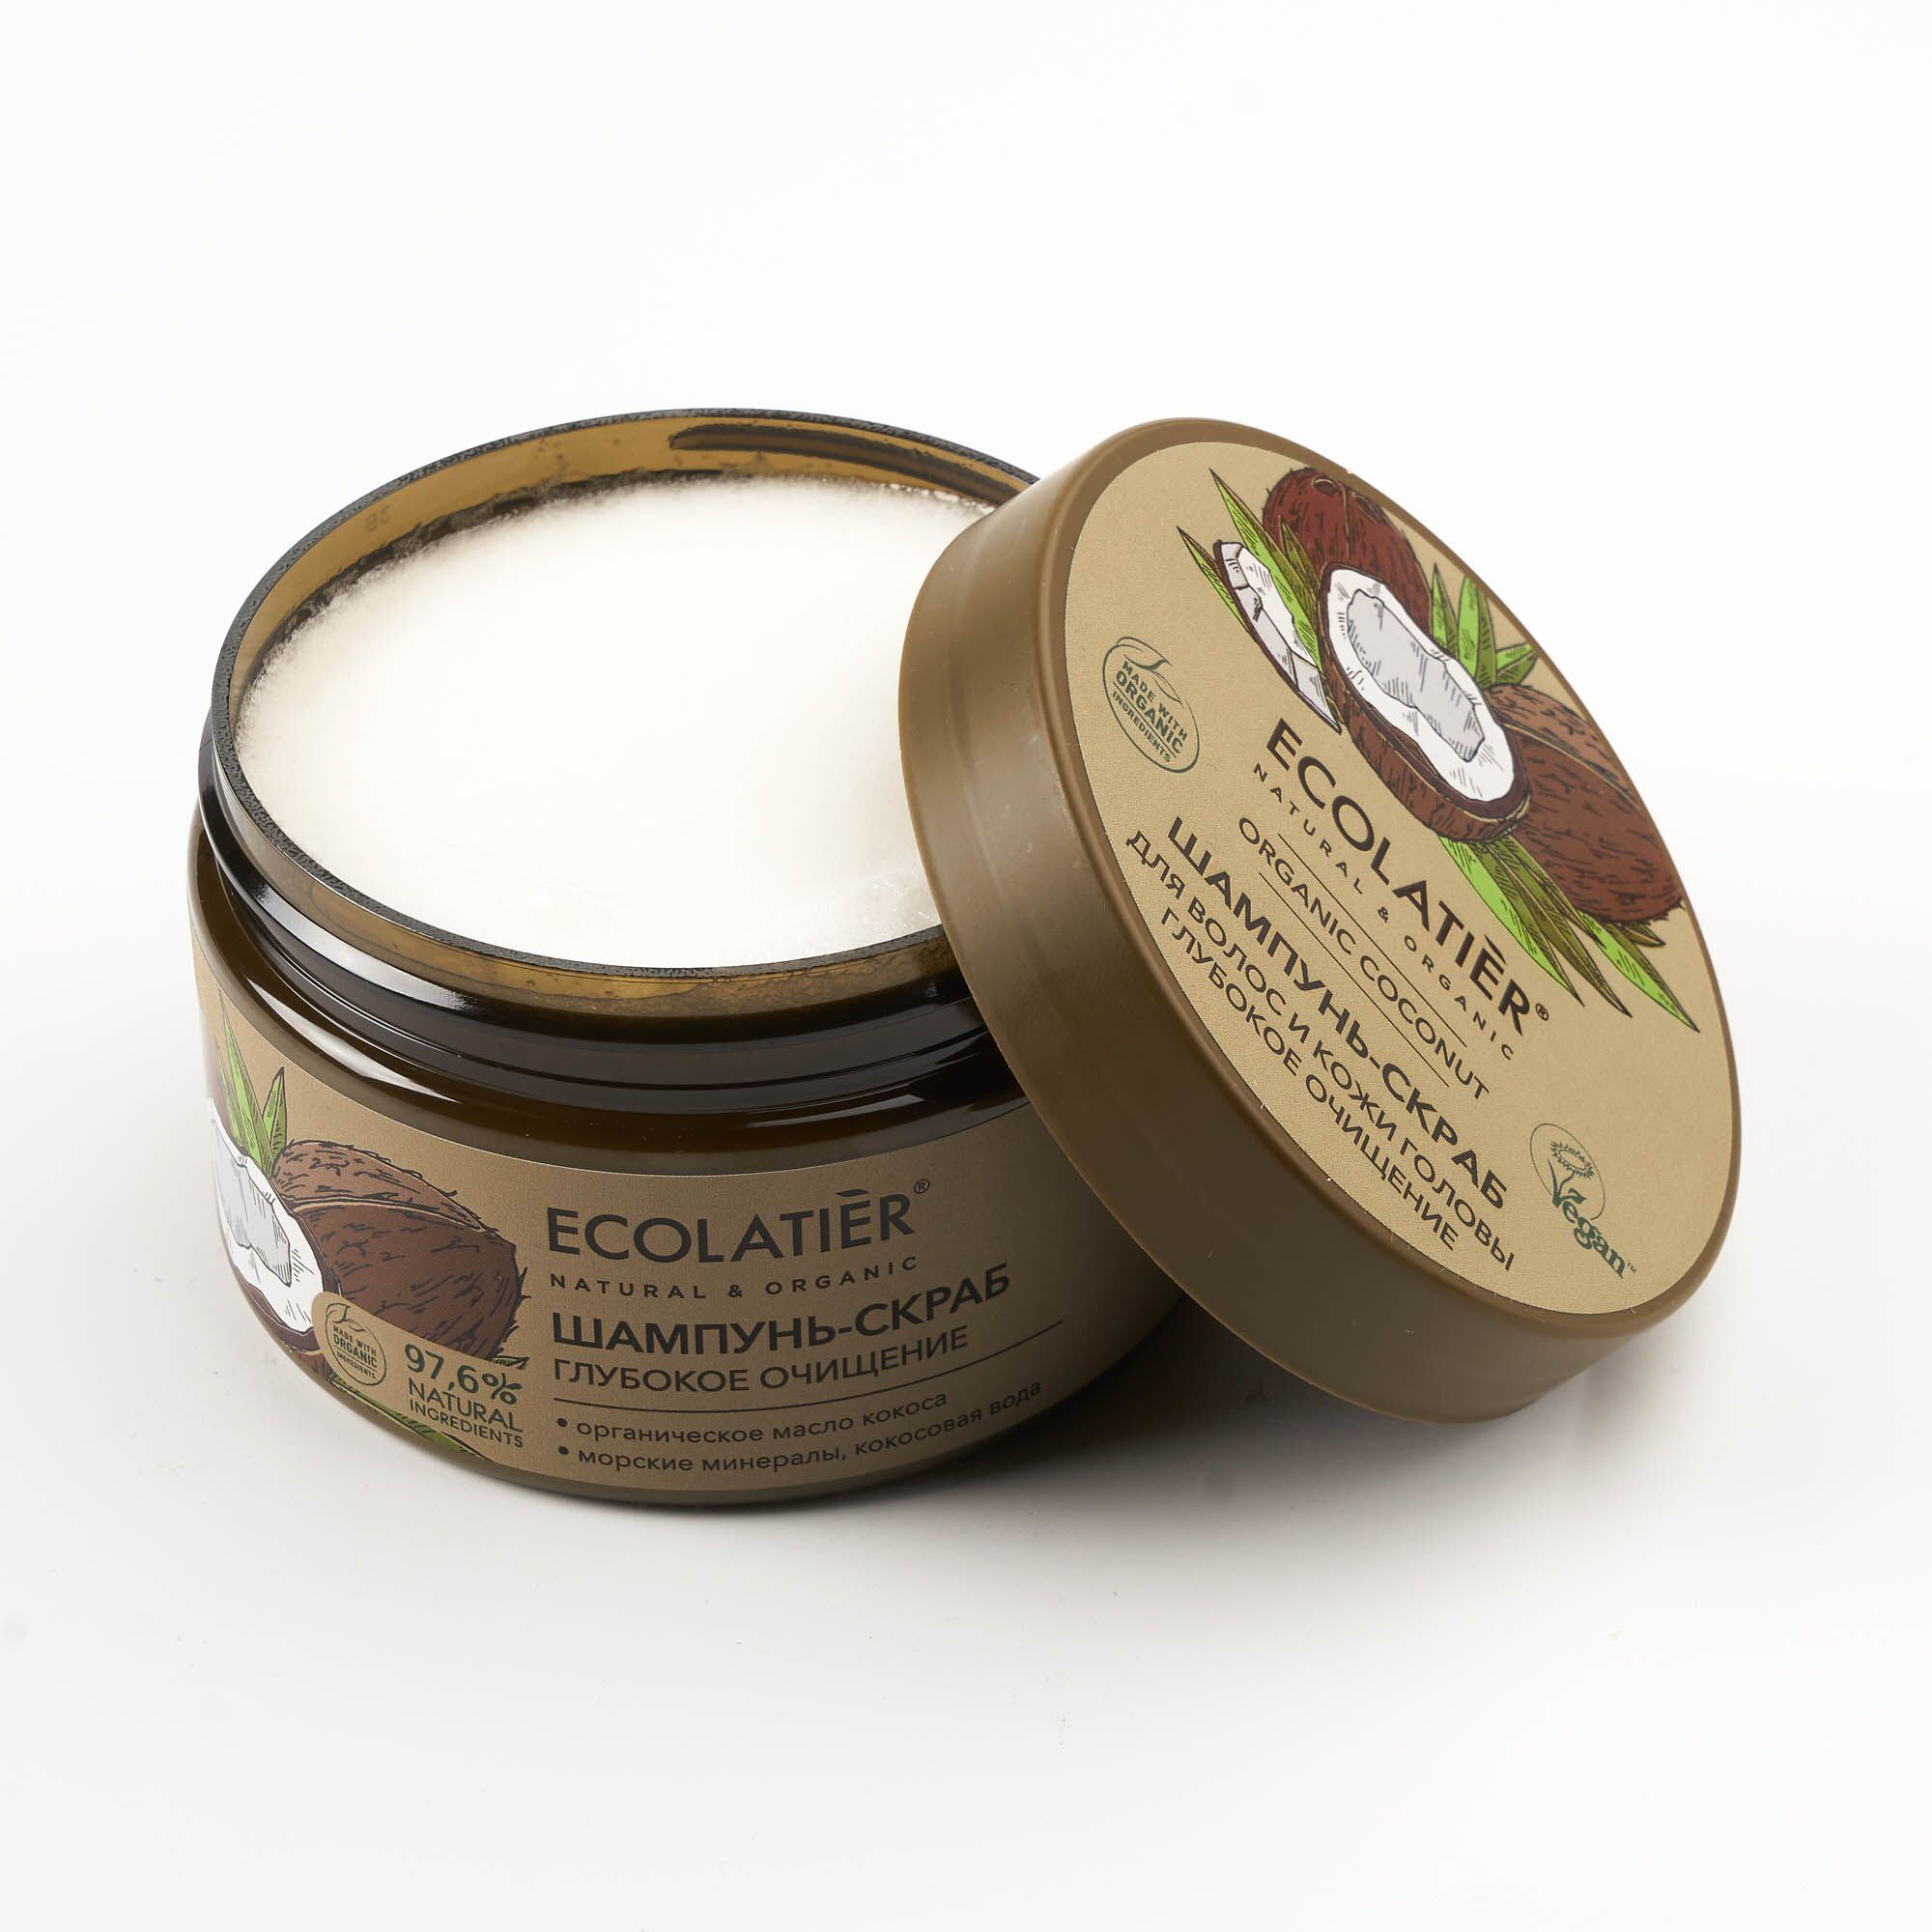 Шампунь-скраб для волос и кожи головы "Глубокое Очищение" Organic Coconut (Ecolatier)